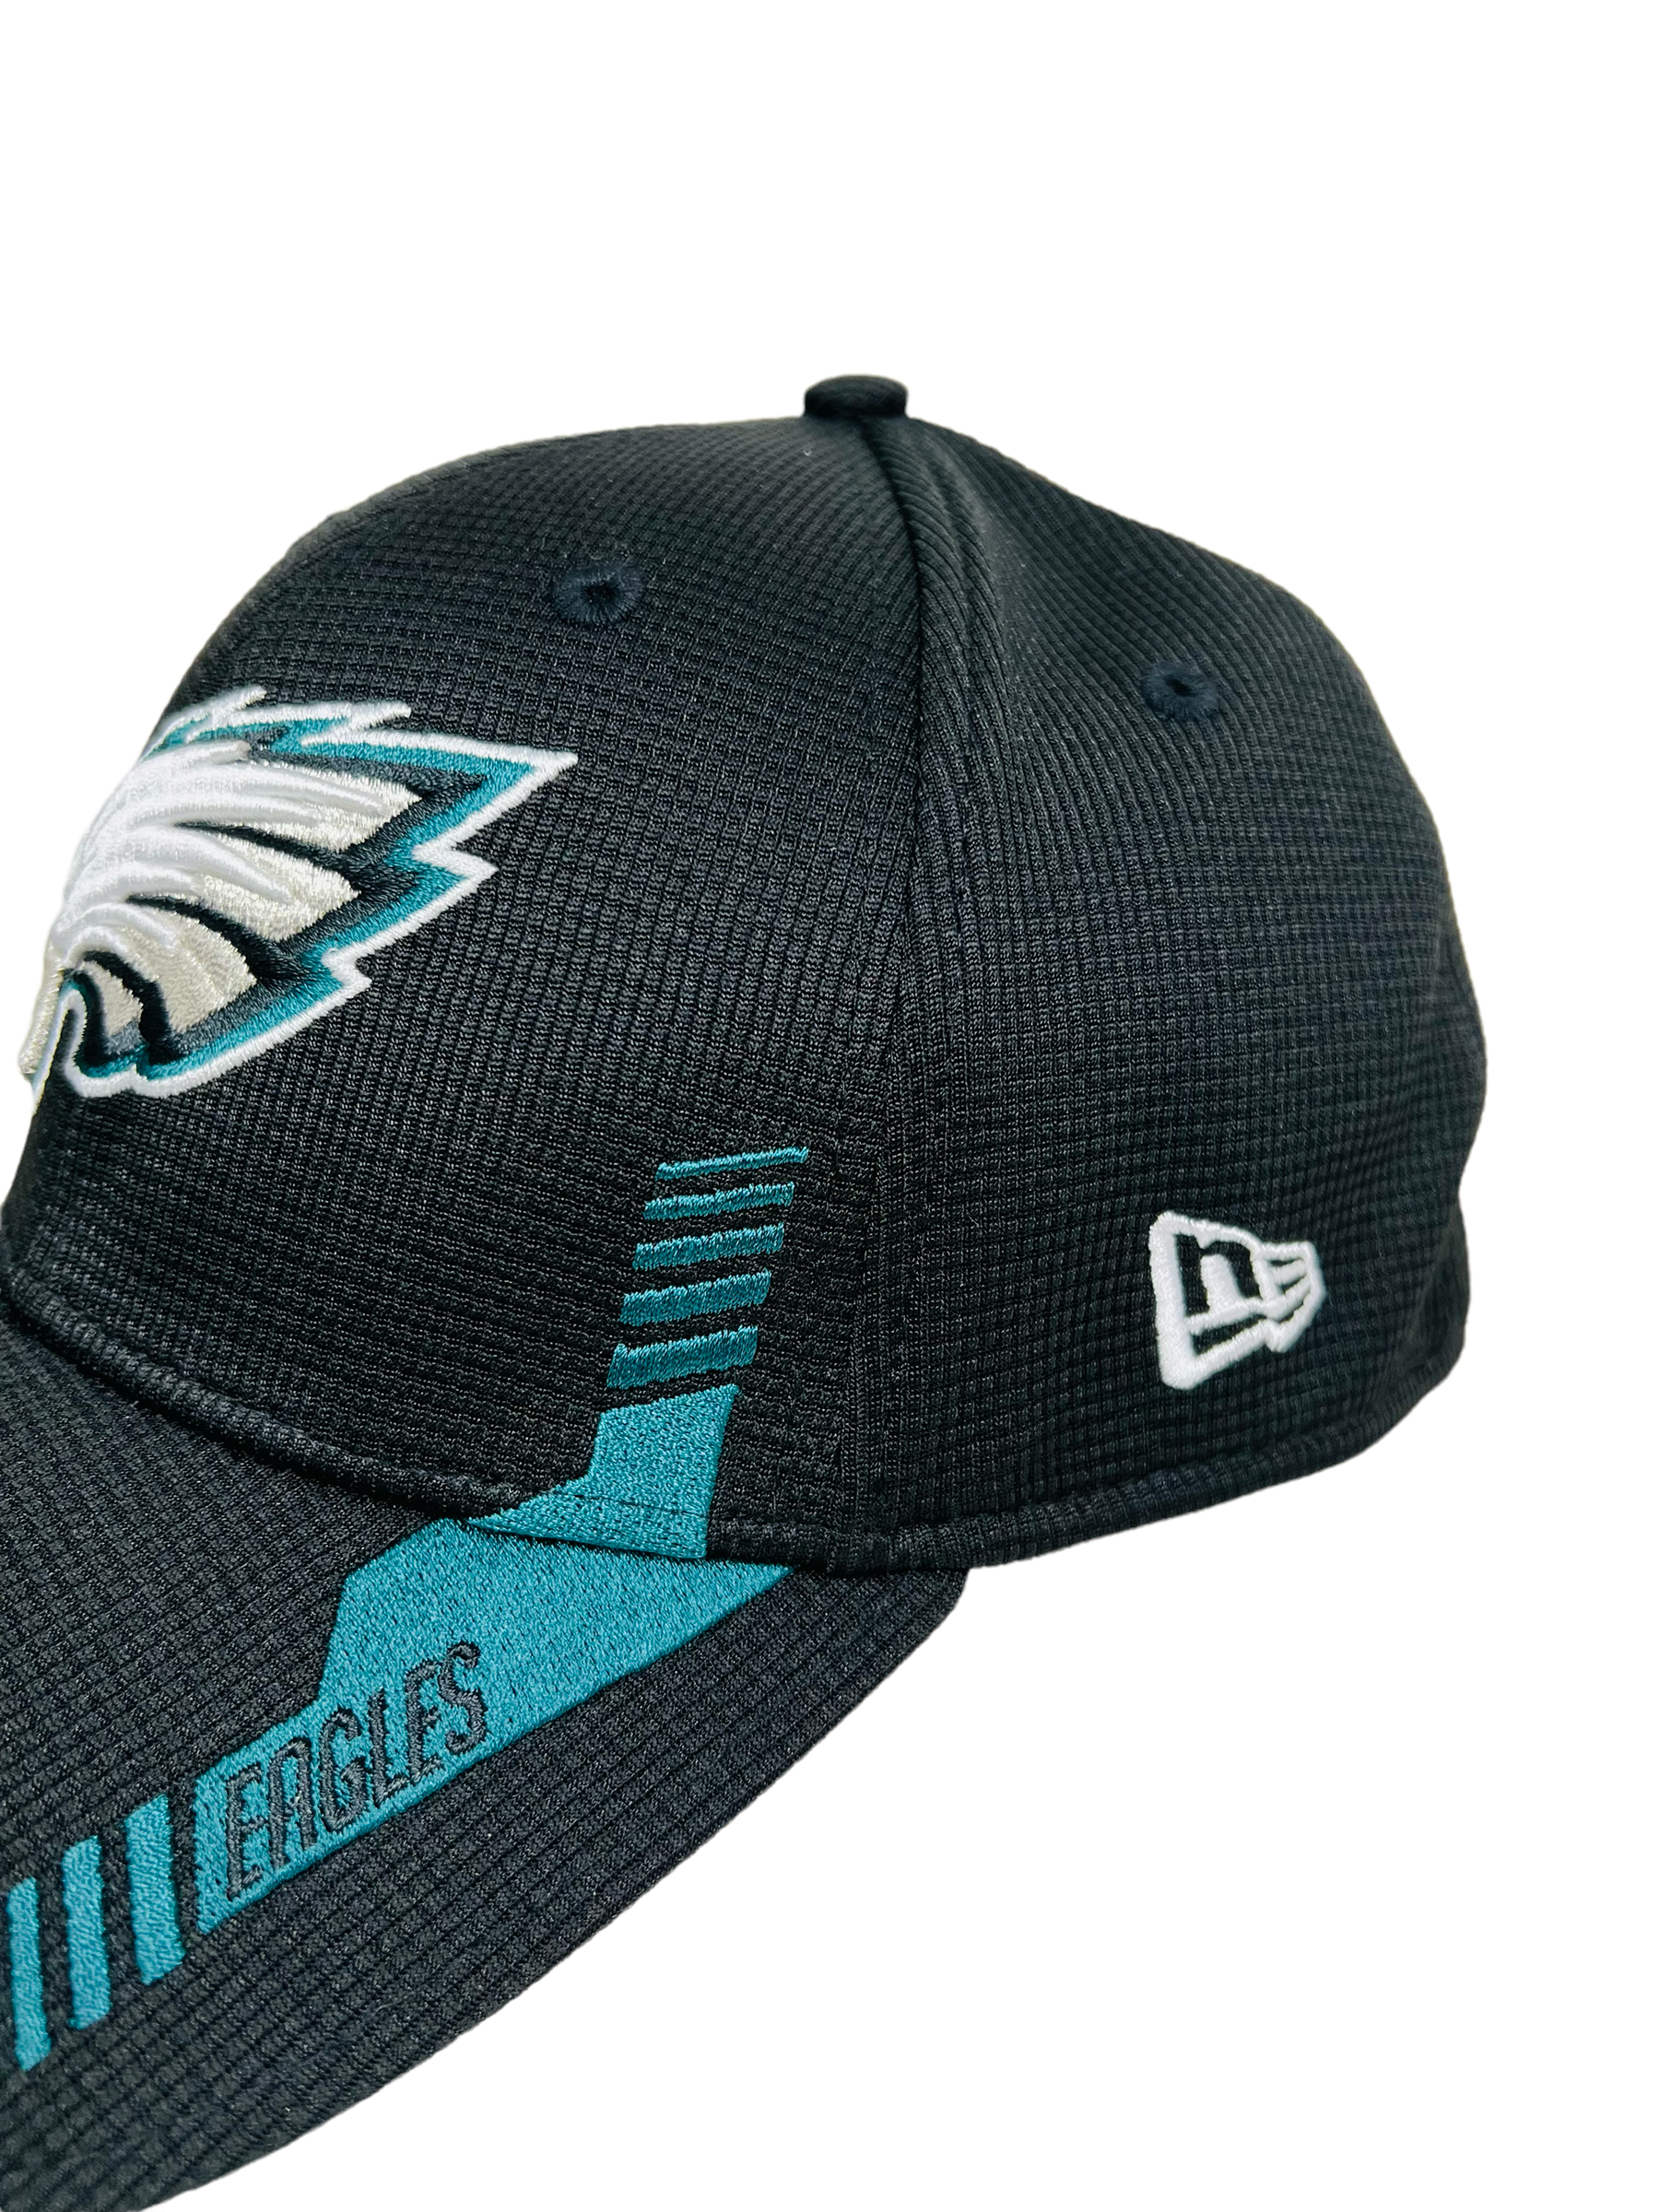 Philadelphia Eagles Team Apparel Hat